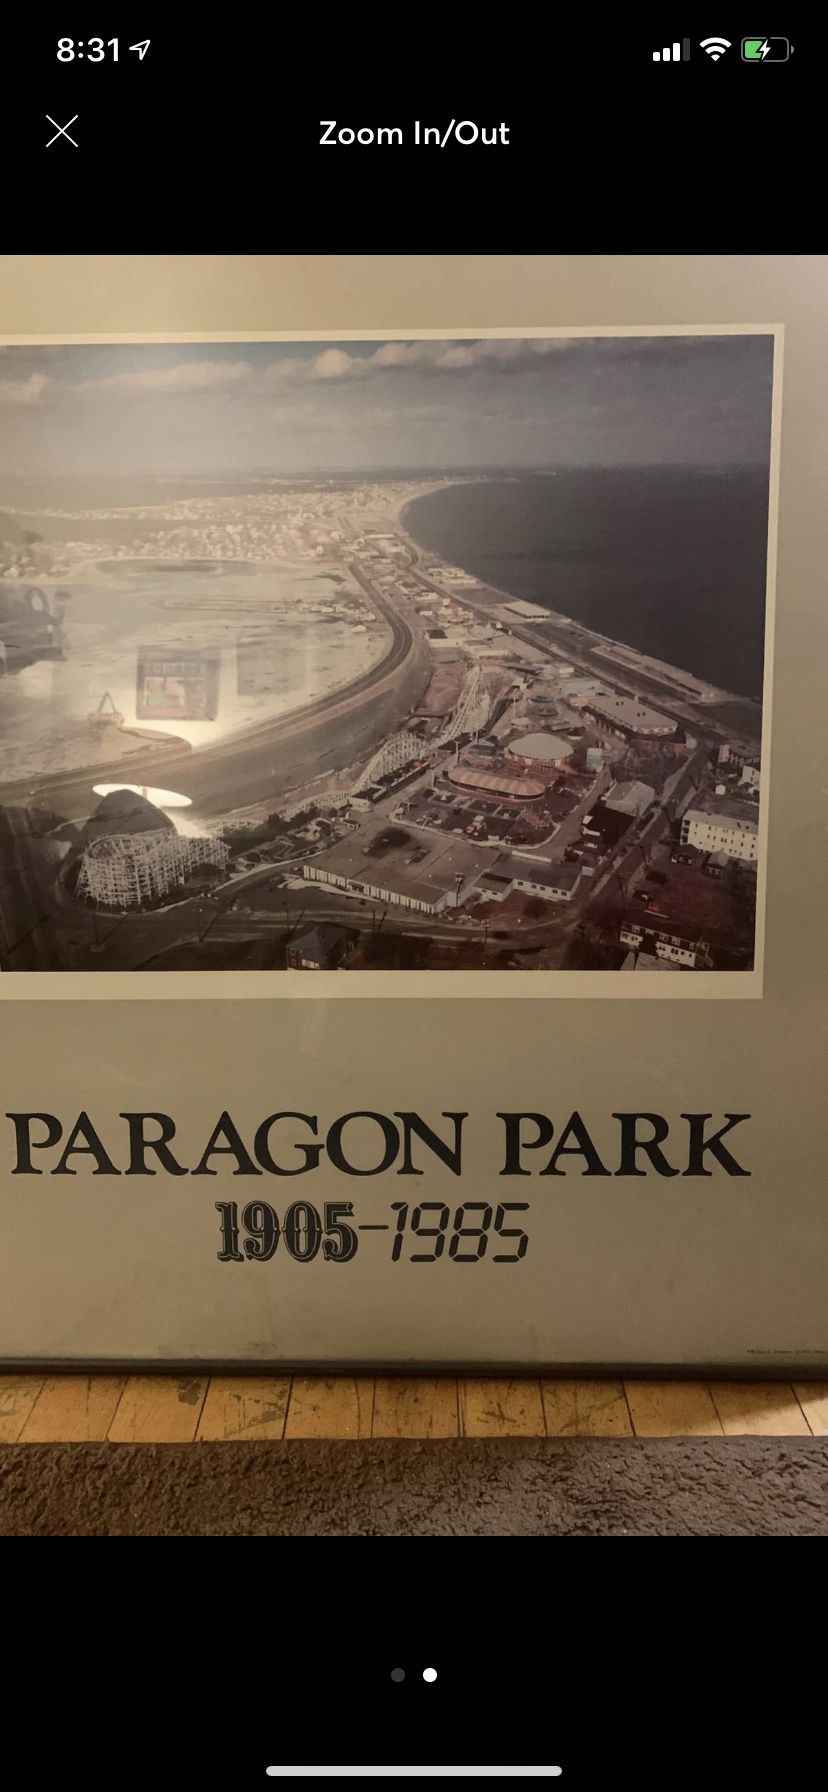 Paragon park picture